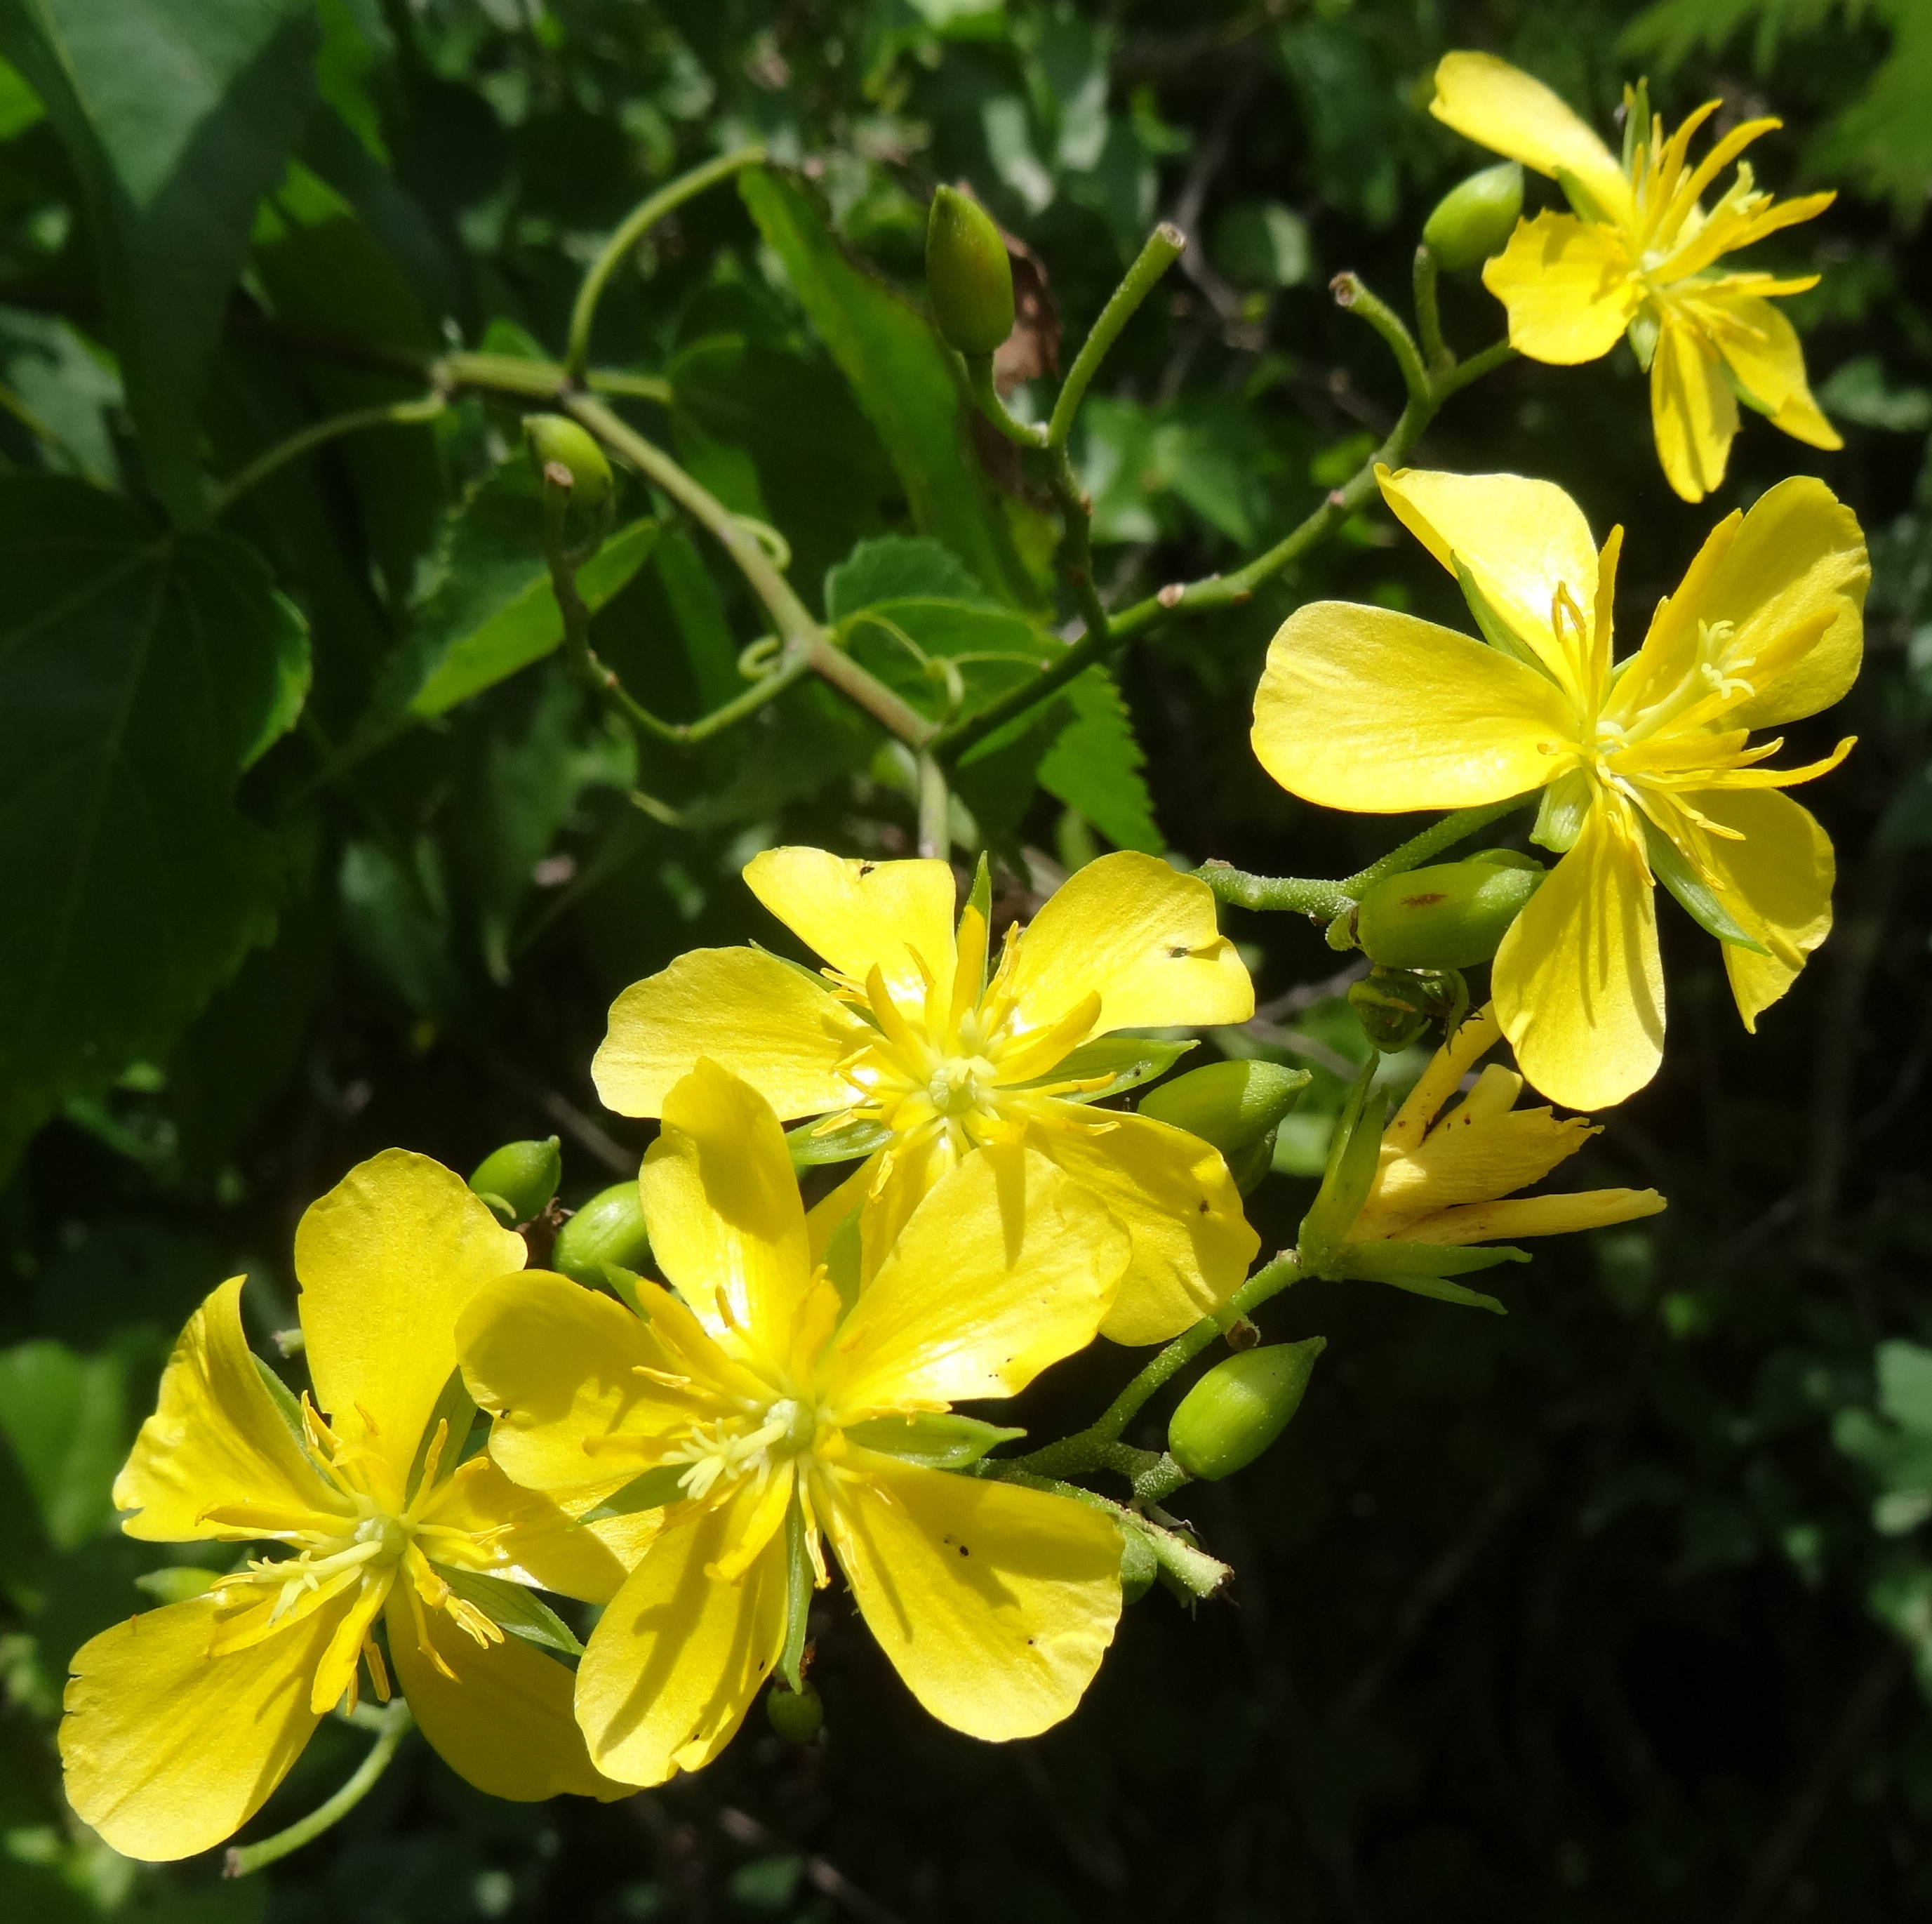 Helmiopsiella sp. Pemba - flowers (12854298534).jpg